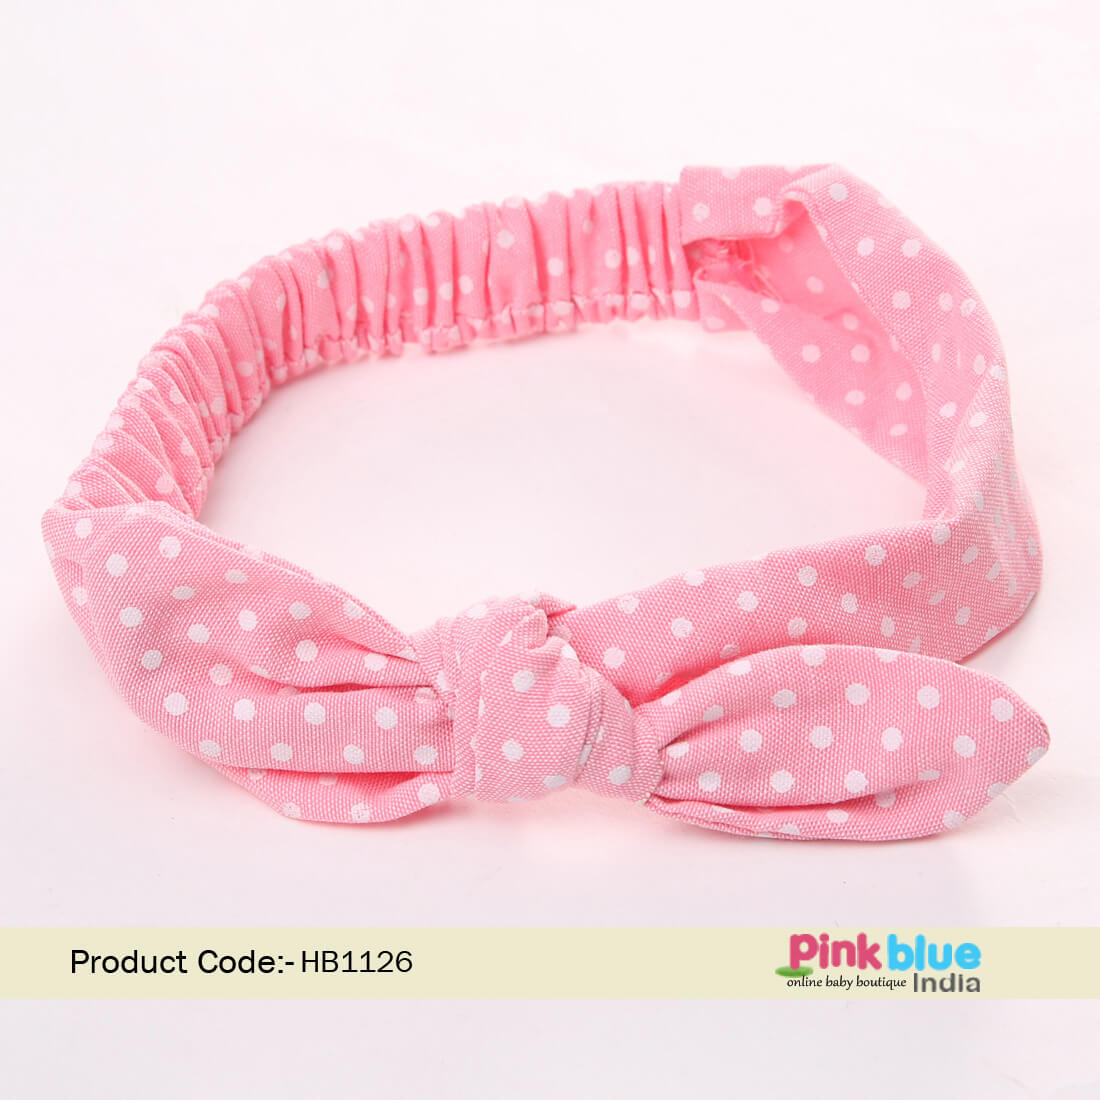 Top Knot Tie Baby Girl Headband, Pink Baby Head Wrap Accessories Online